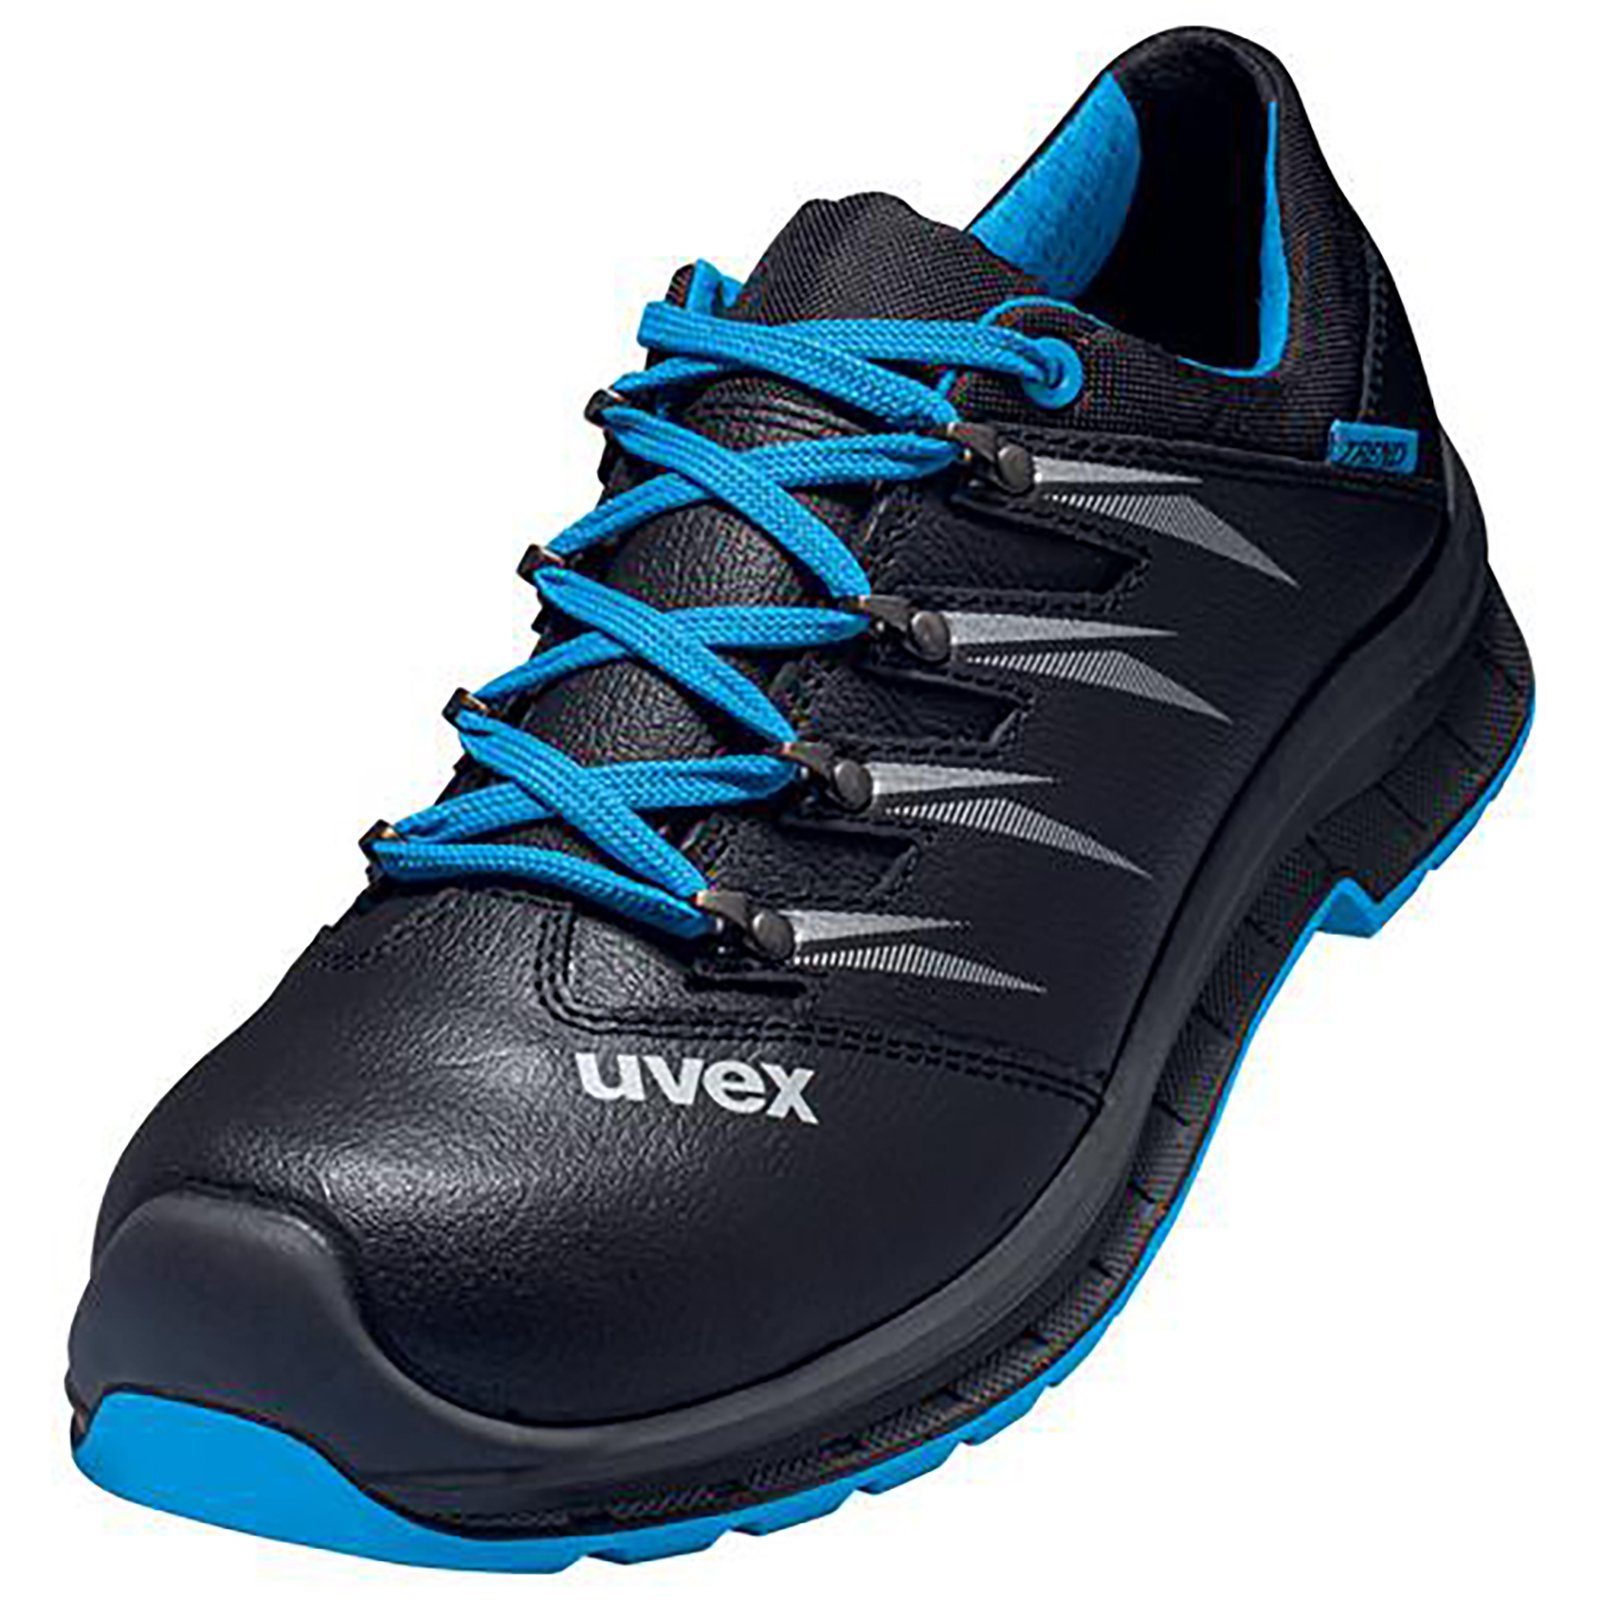 Uvex 2 trend Halbschuhe S3 blau, schwarz Weite 10 Sicherheitsschuh